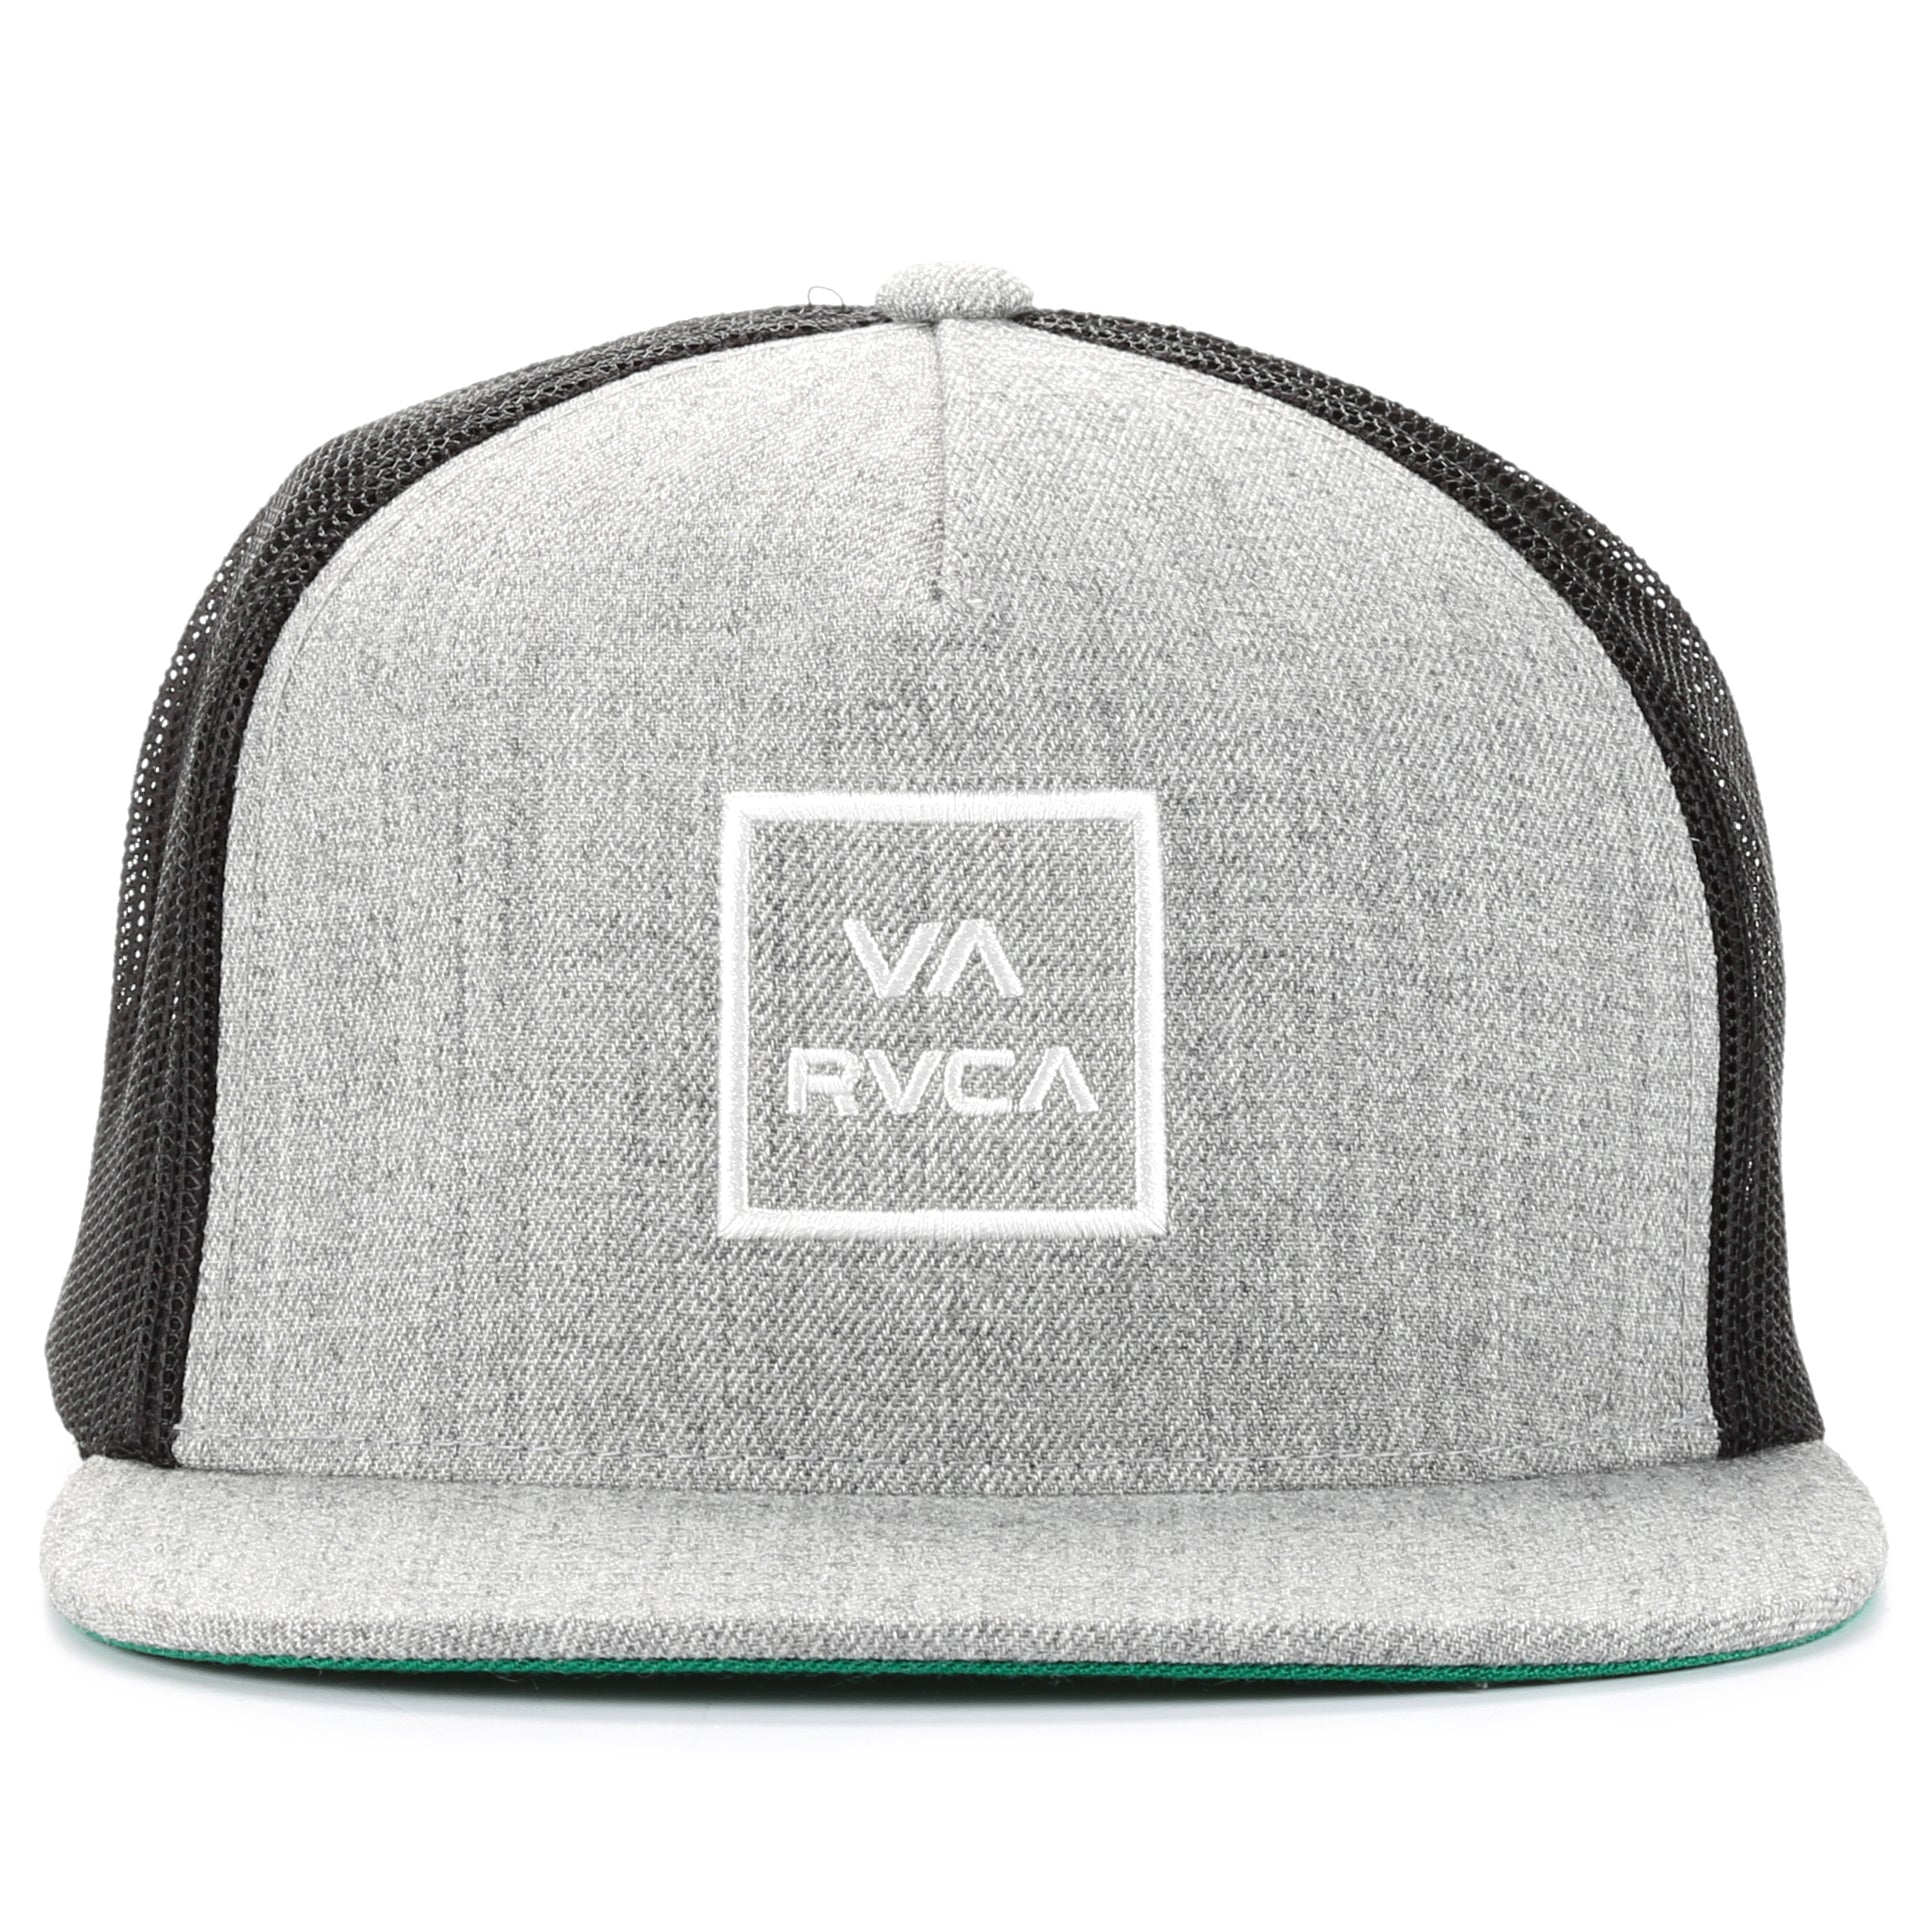 RVCA Stripes Trucker Hat - Men's Hats in Light Grey